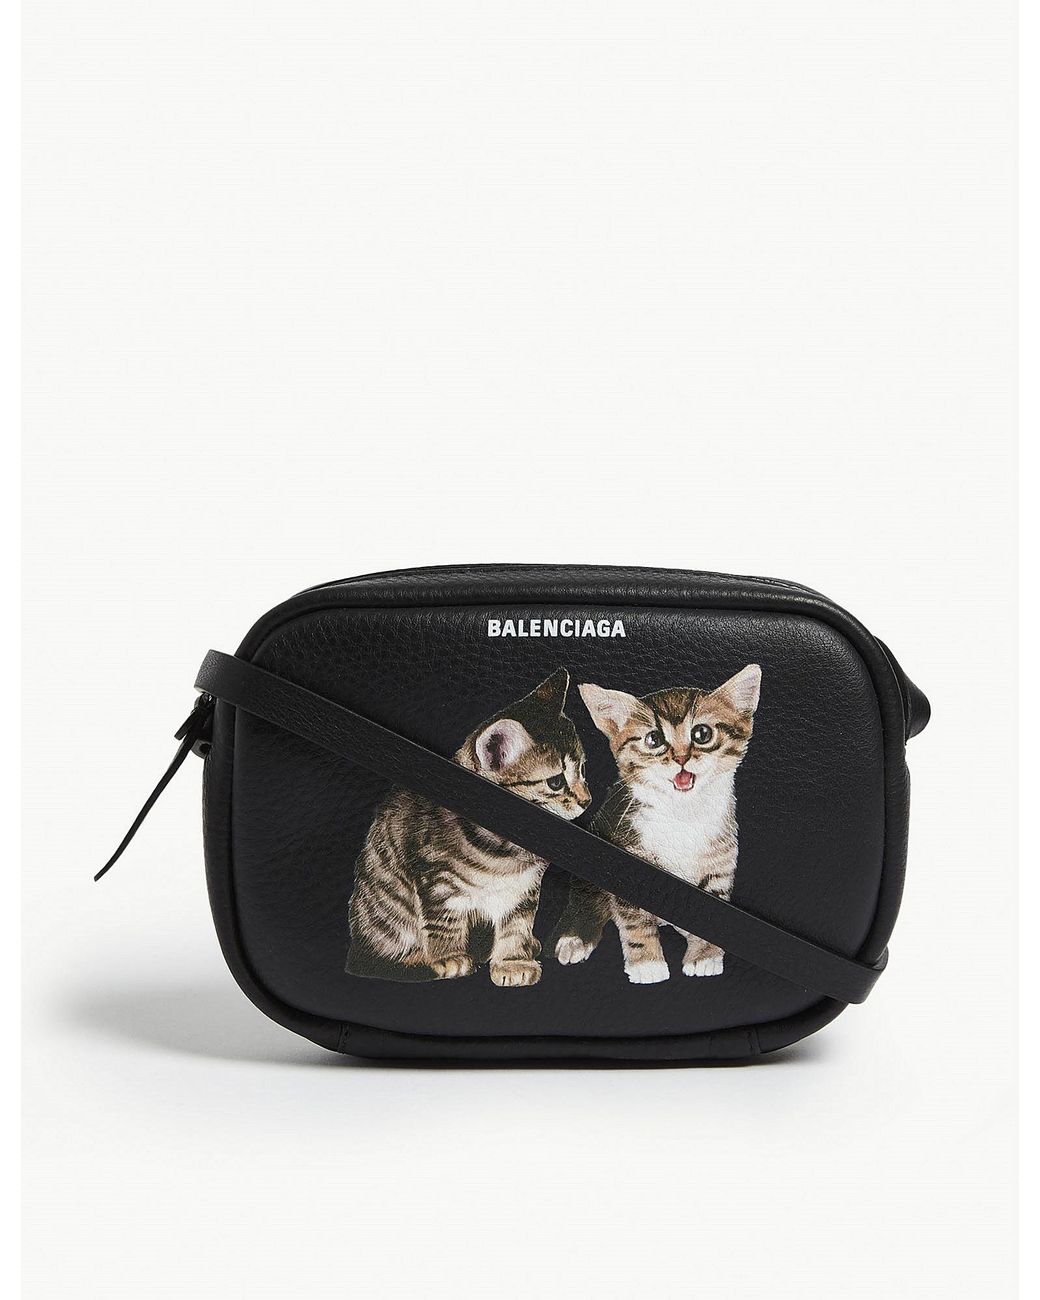 Balenciaga Cat Crossbody Bag Leather Black | Lyst Canada